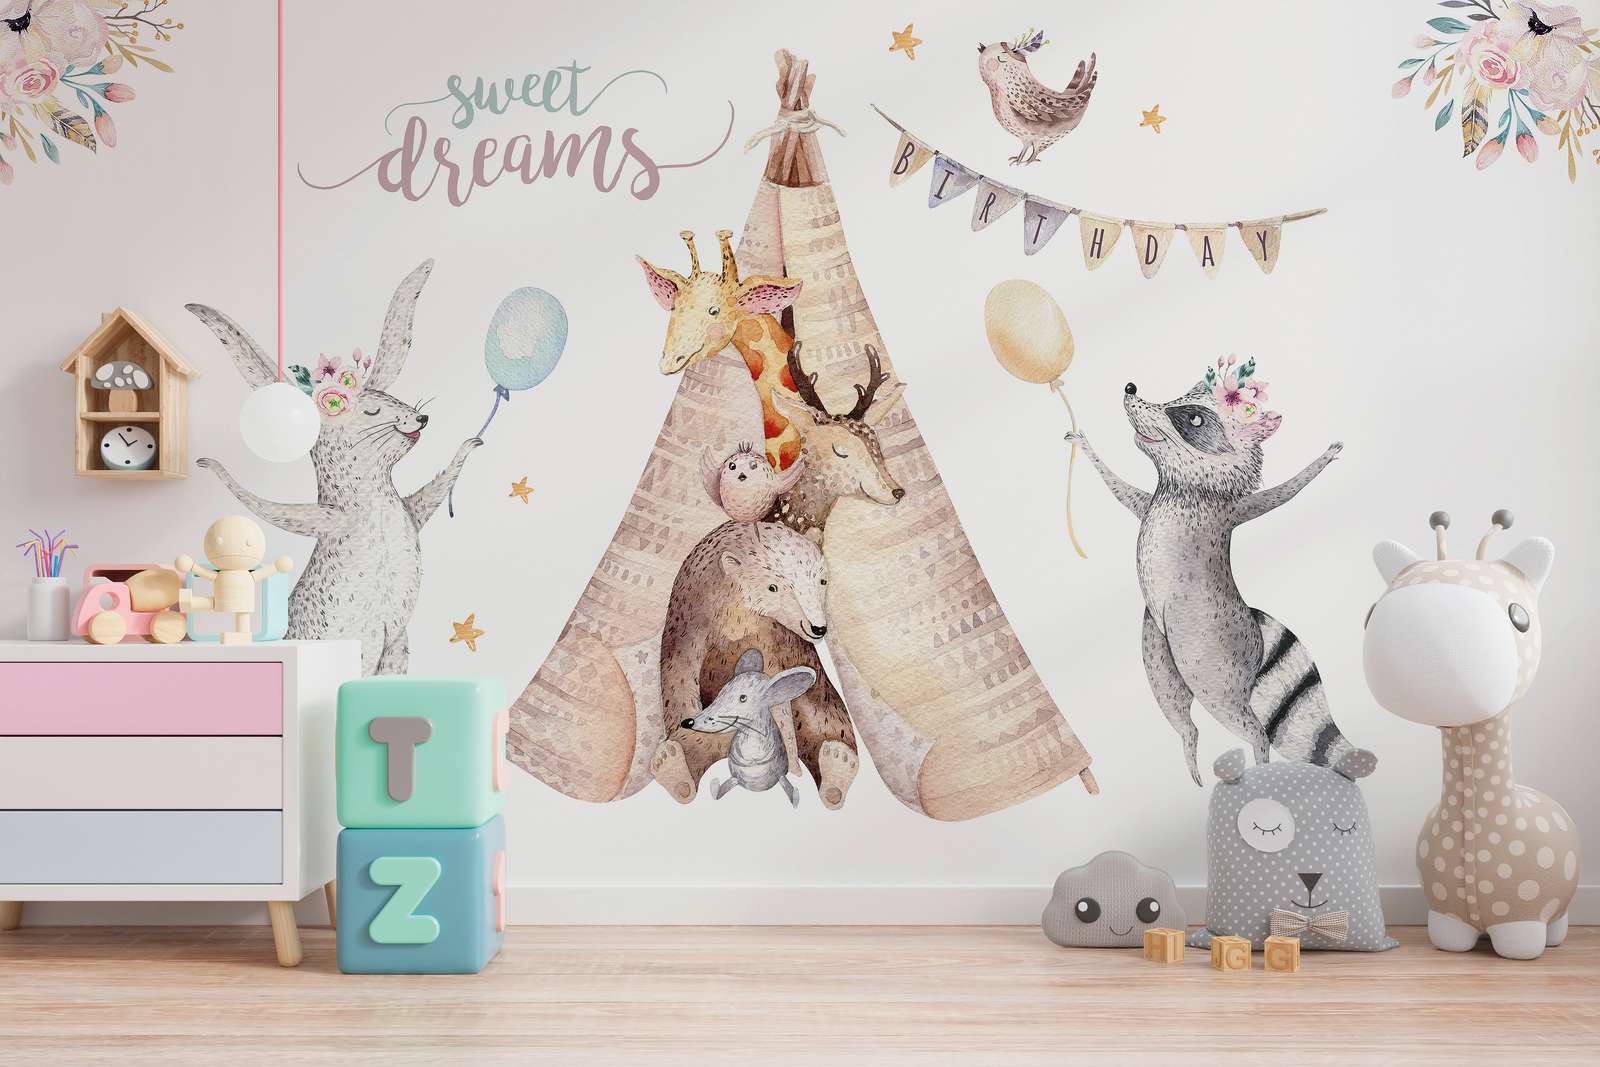             Fototapete Kinderzimmer Tiere bei einer Geburtstagsparty – Beige, Grau, Bunt
        